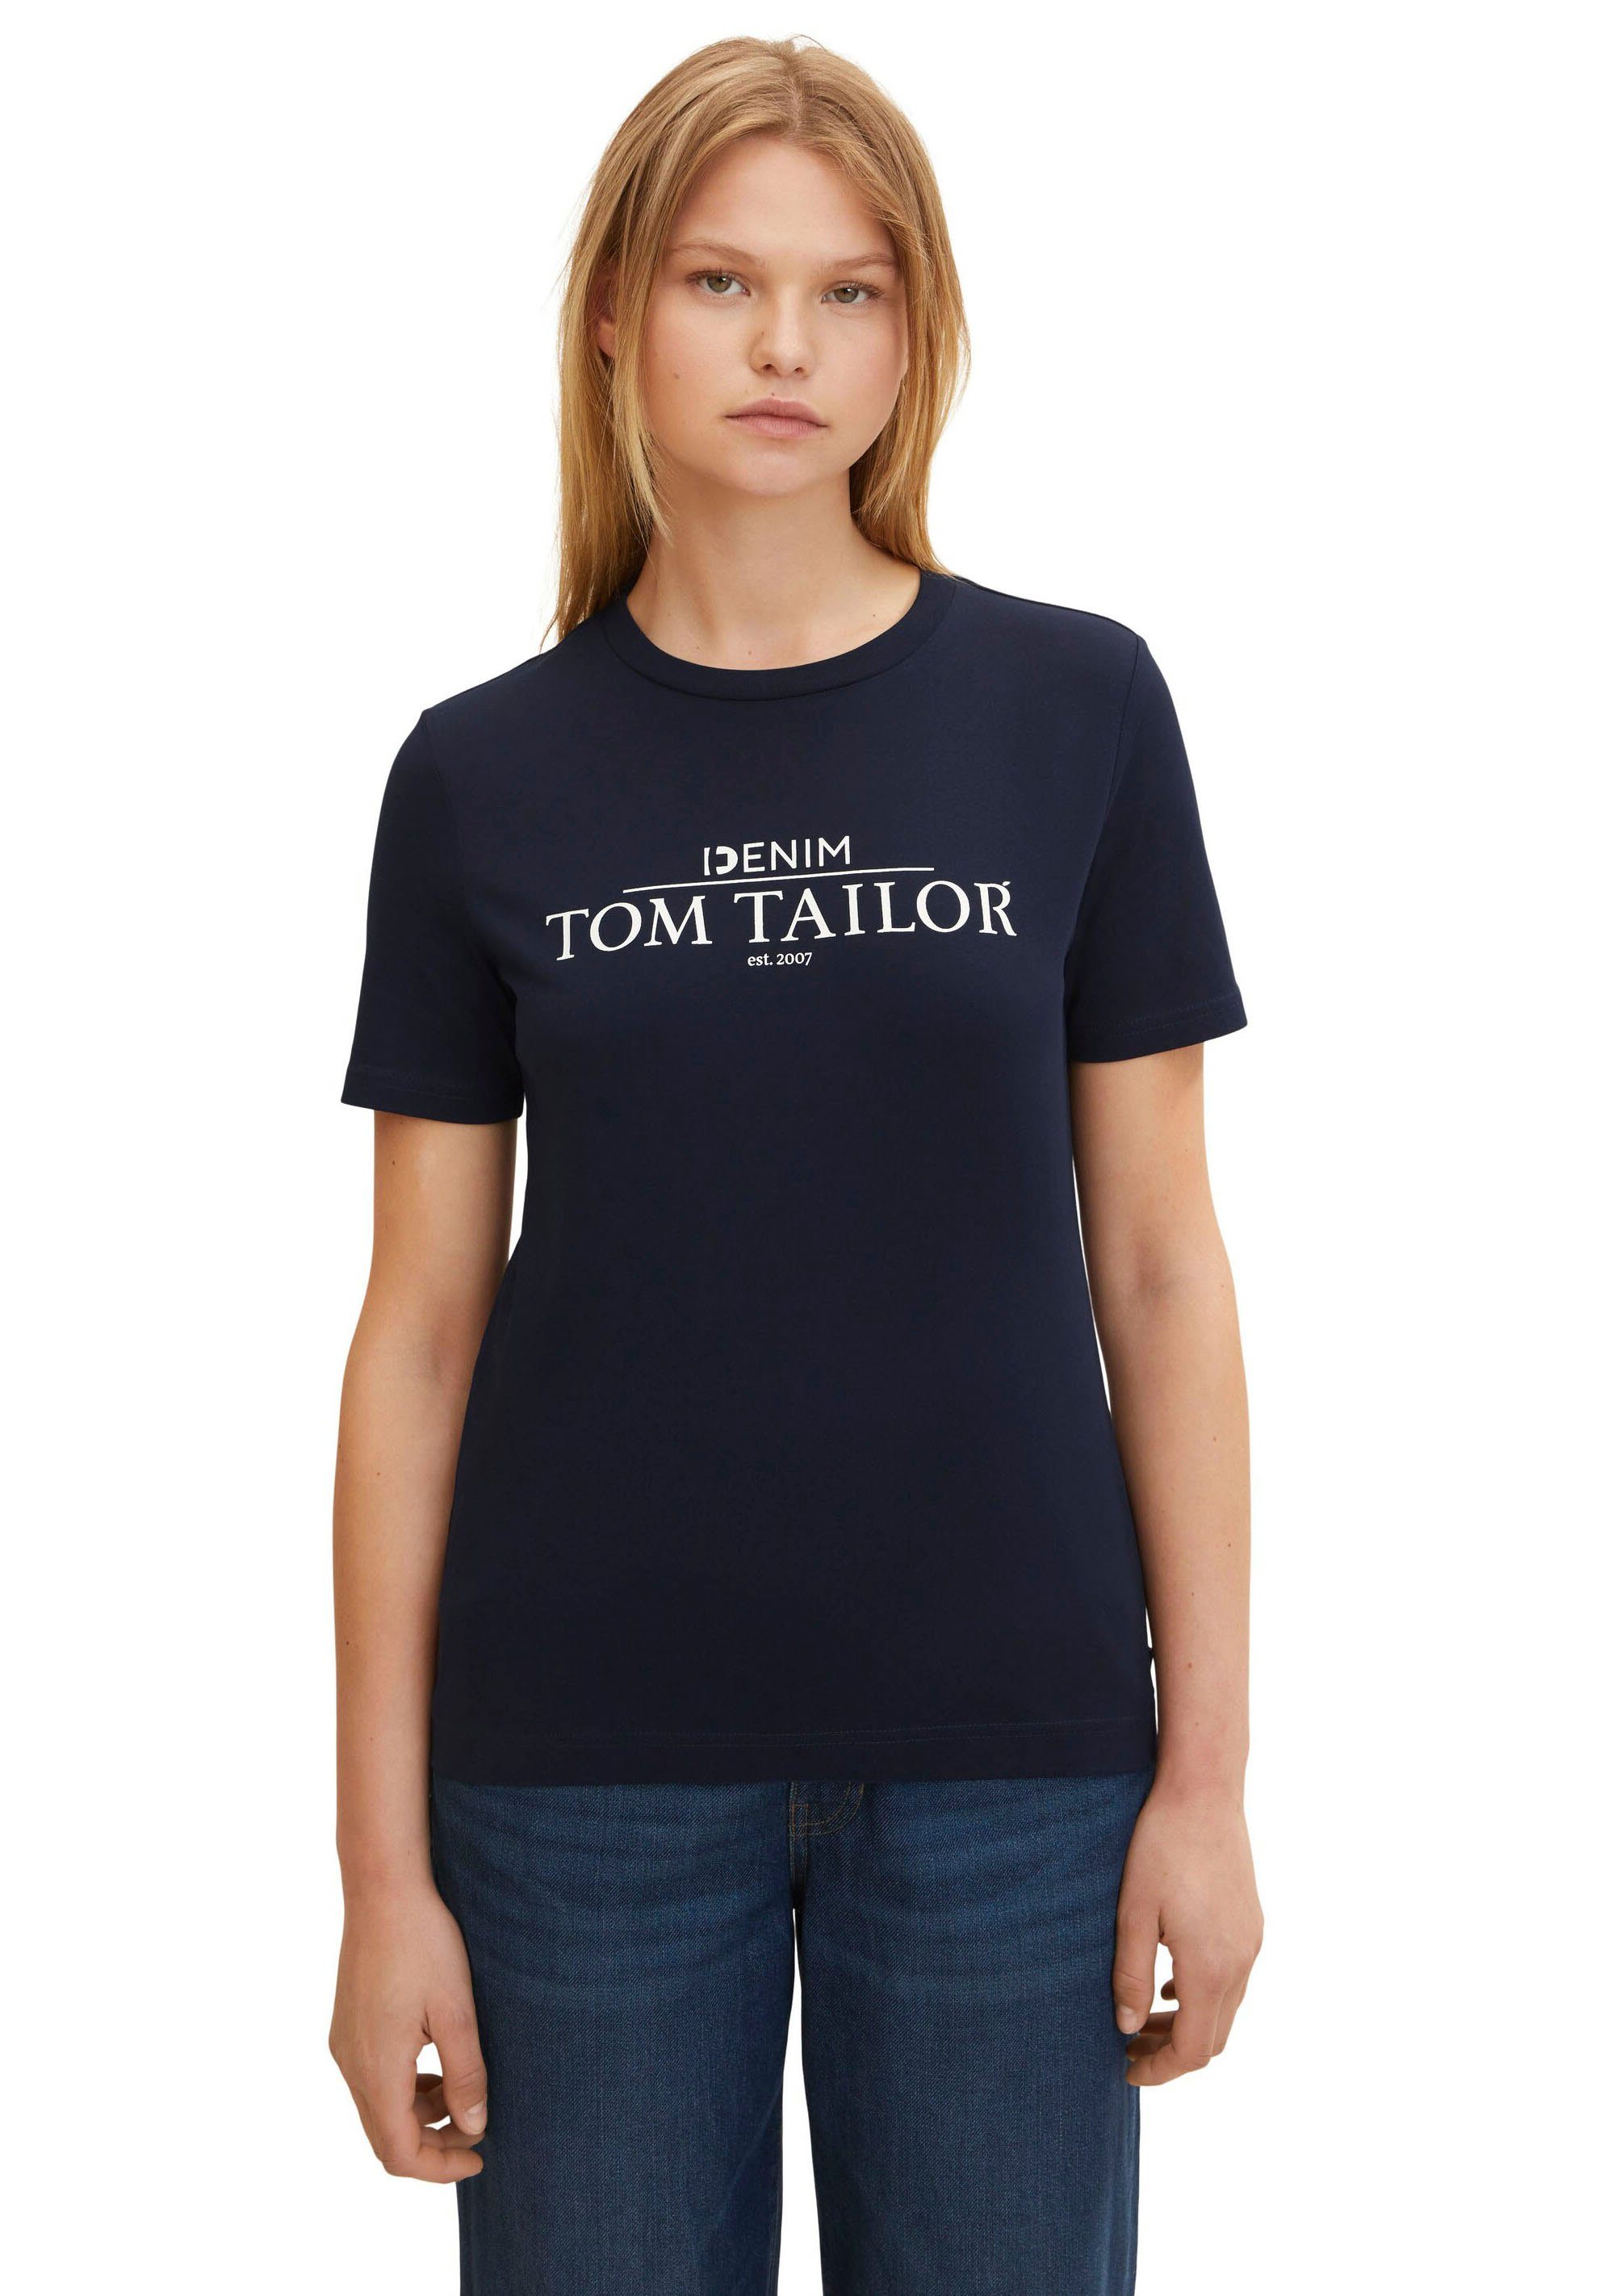 Tom Tailor Shirts online kaufen | OTTO